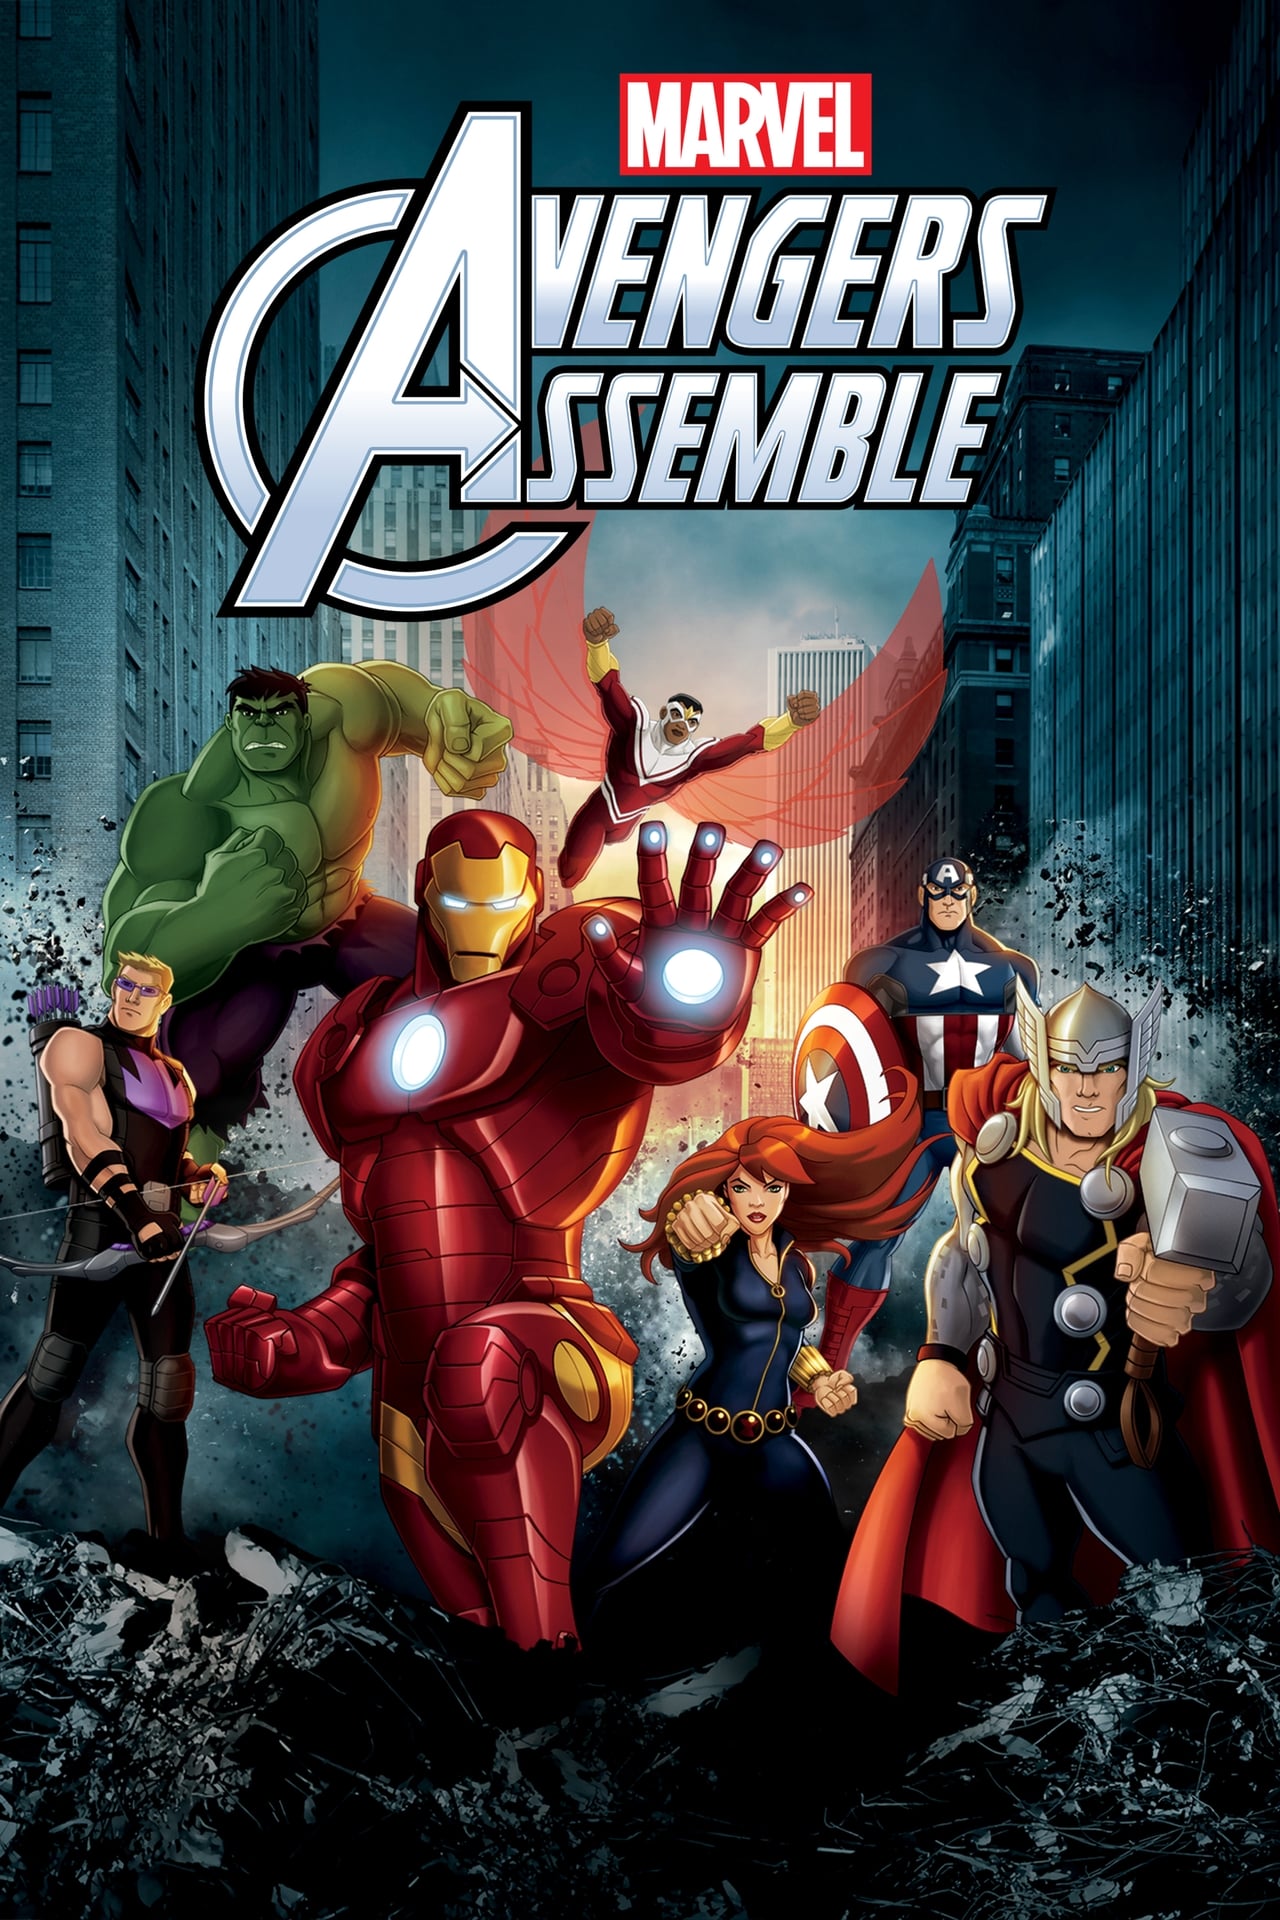 Image Marvel's Avengers Assemble